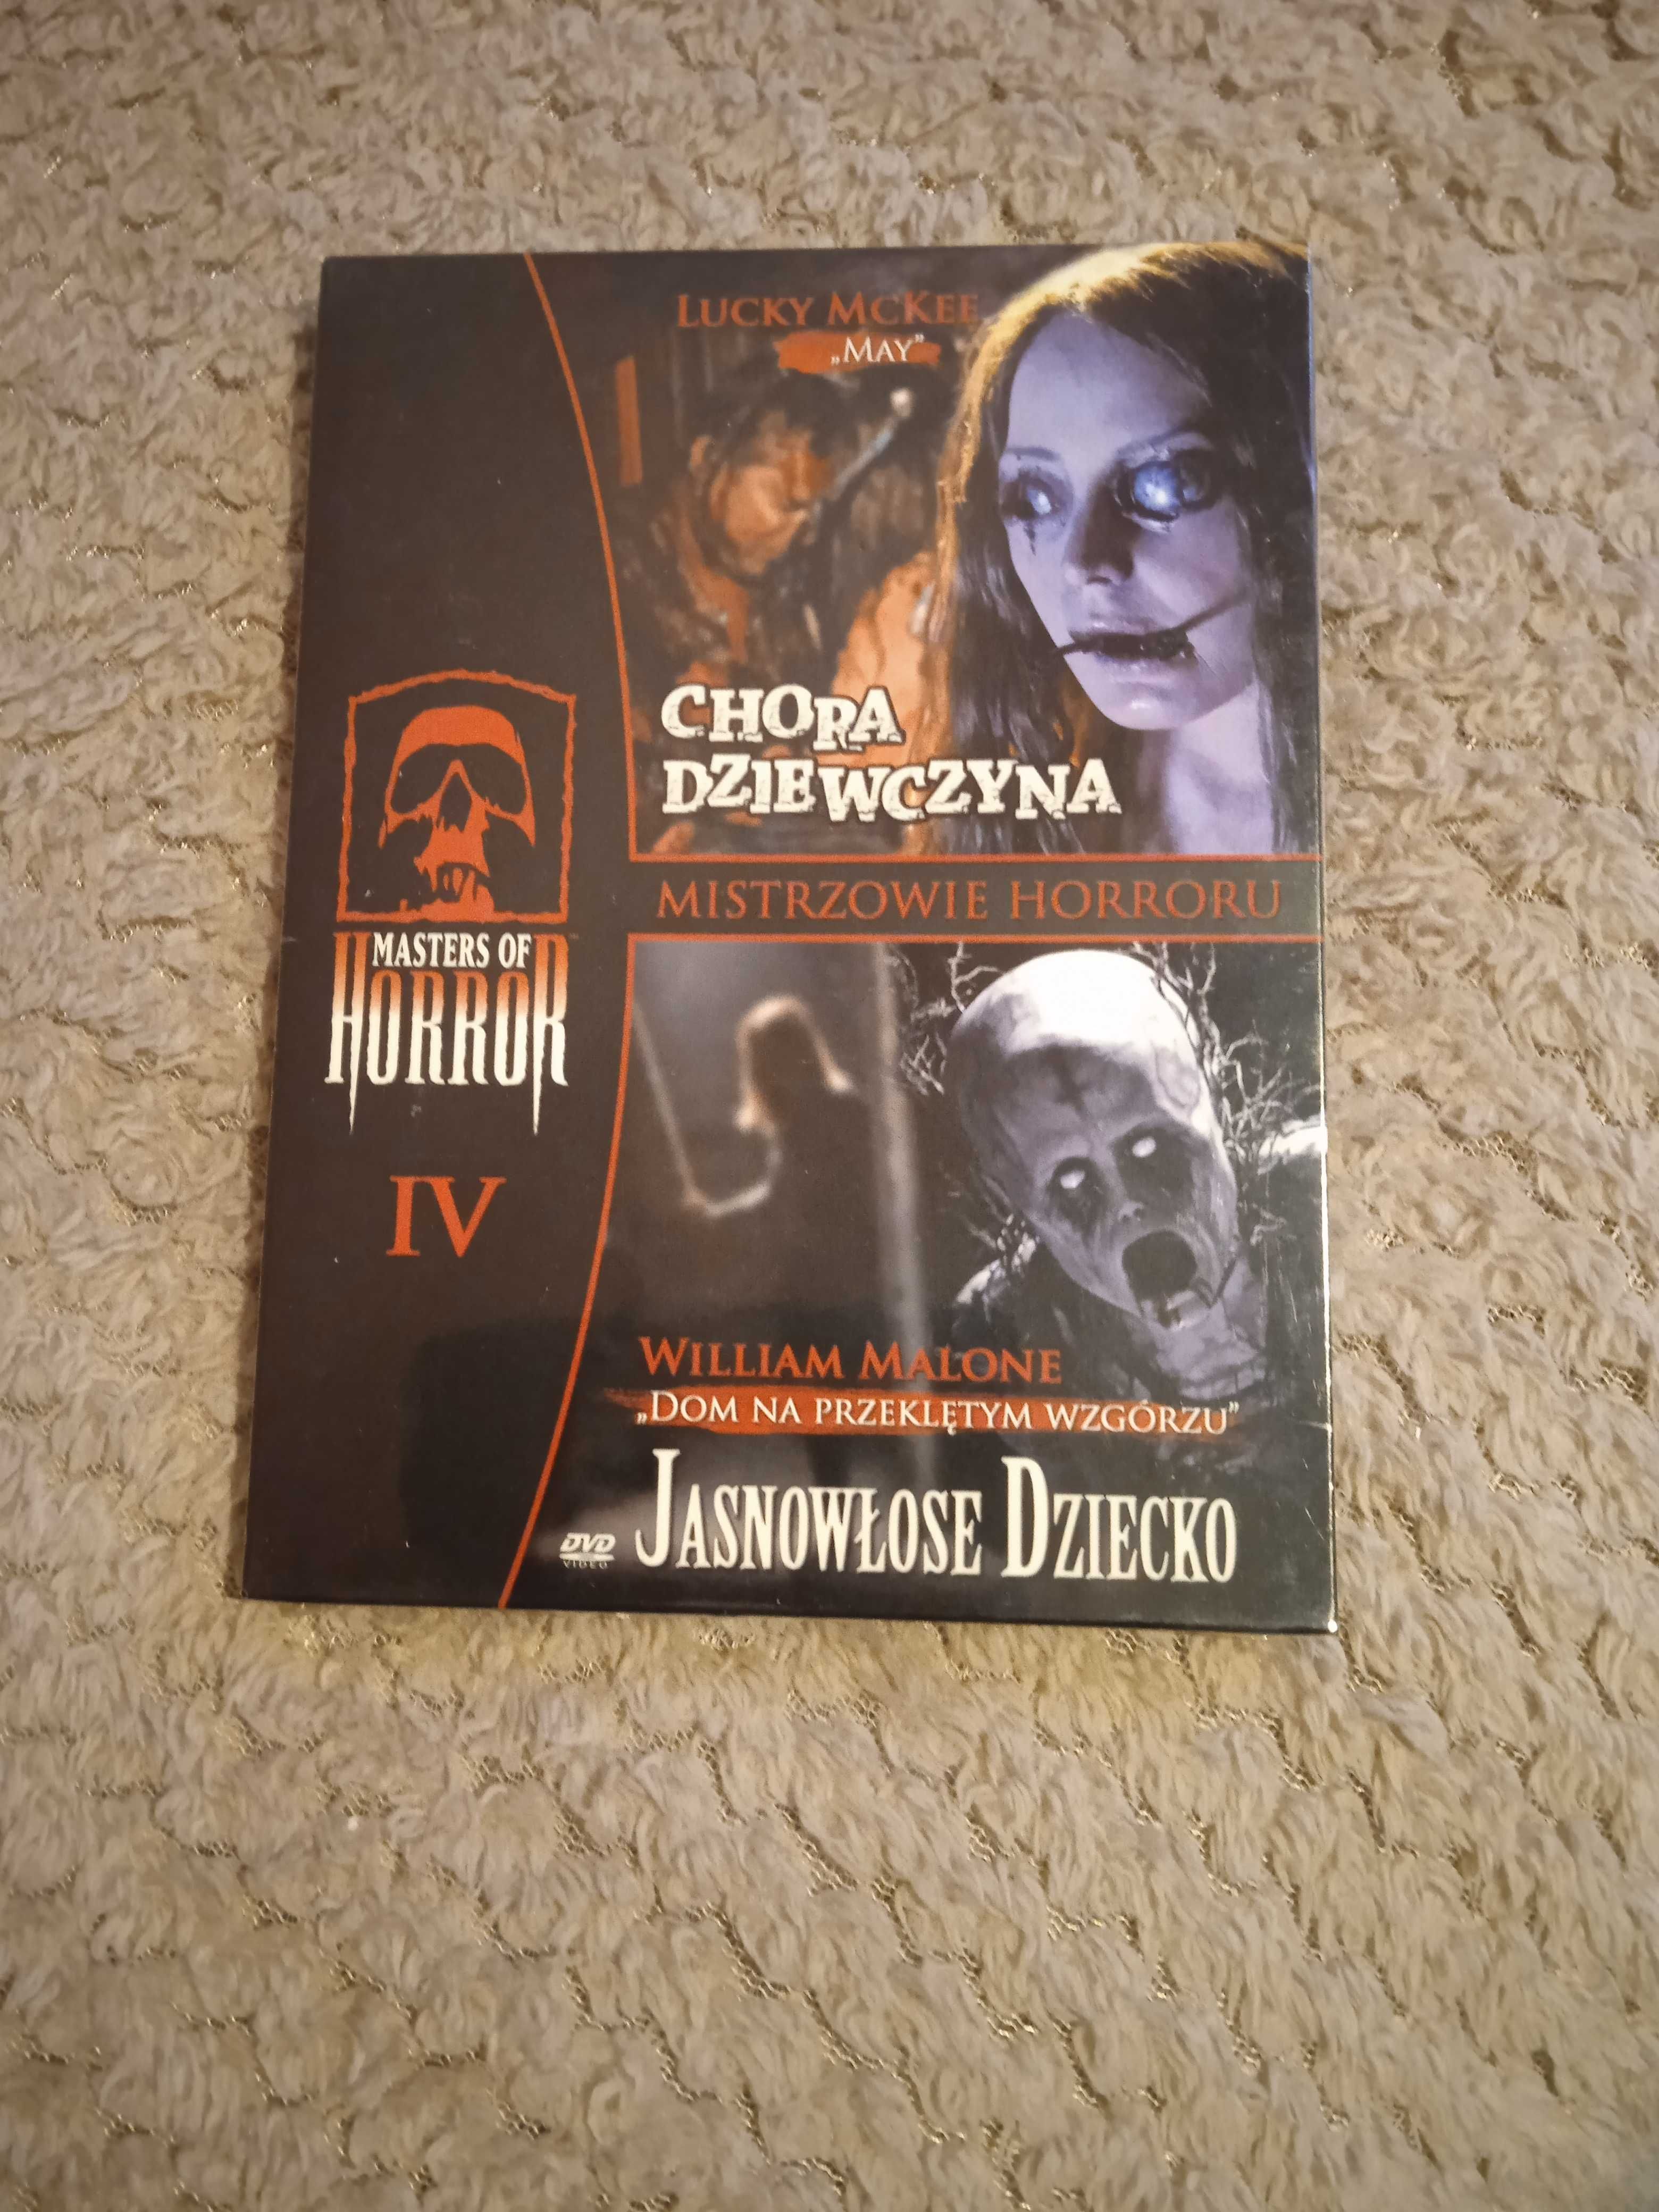 Chora dziewczyna , Jasnowłose dziecko - horror 2 filmy na płycie DVD